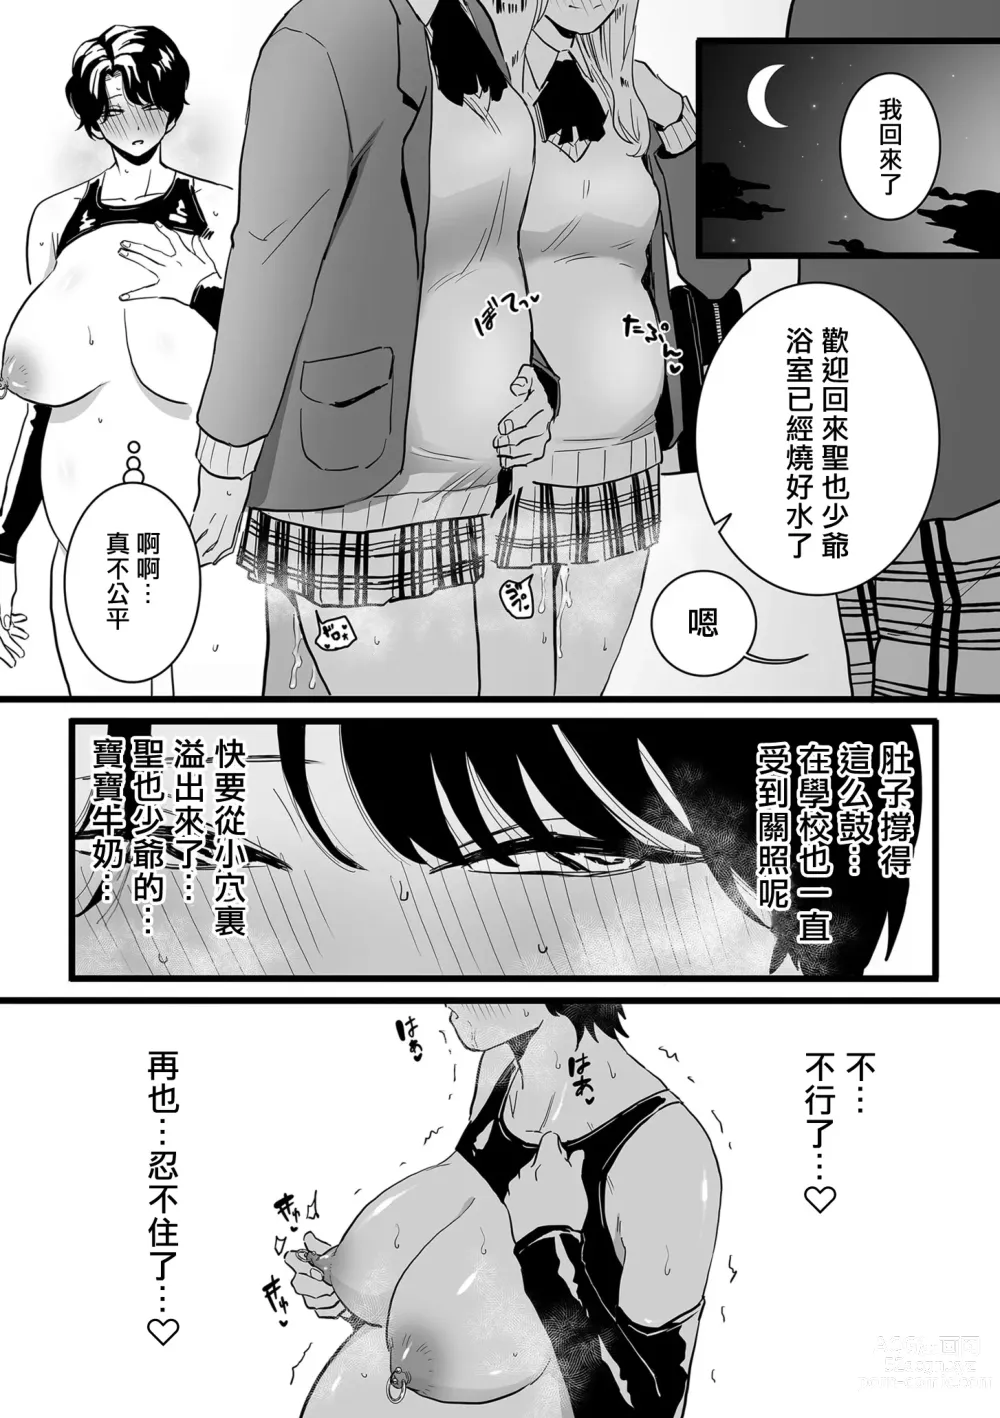 Page 8 of manga Mesu Dorei Sengen denshi tokusou ban egaki oroshi manga